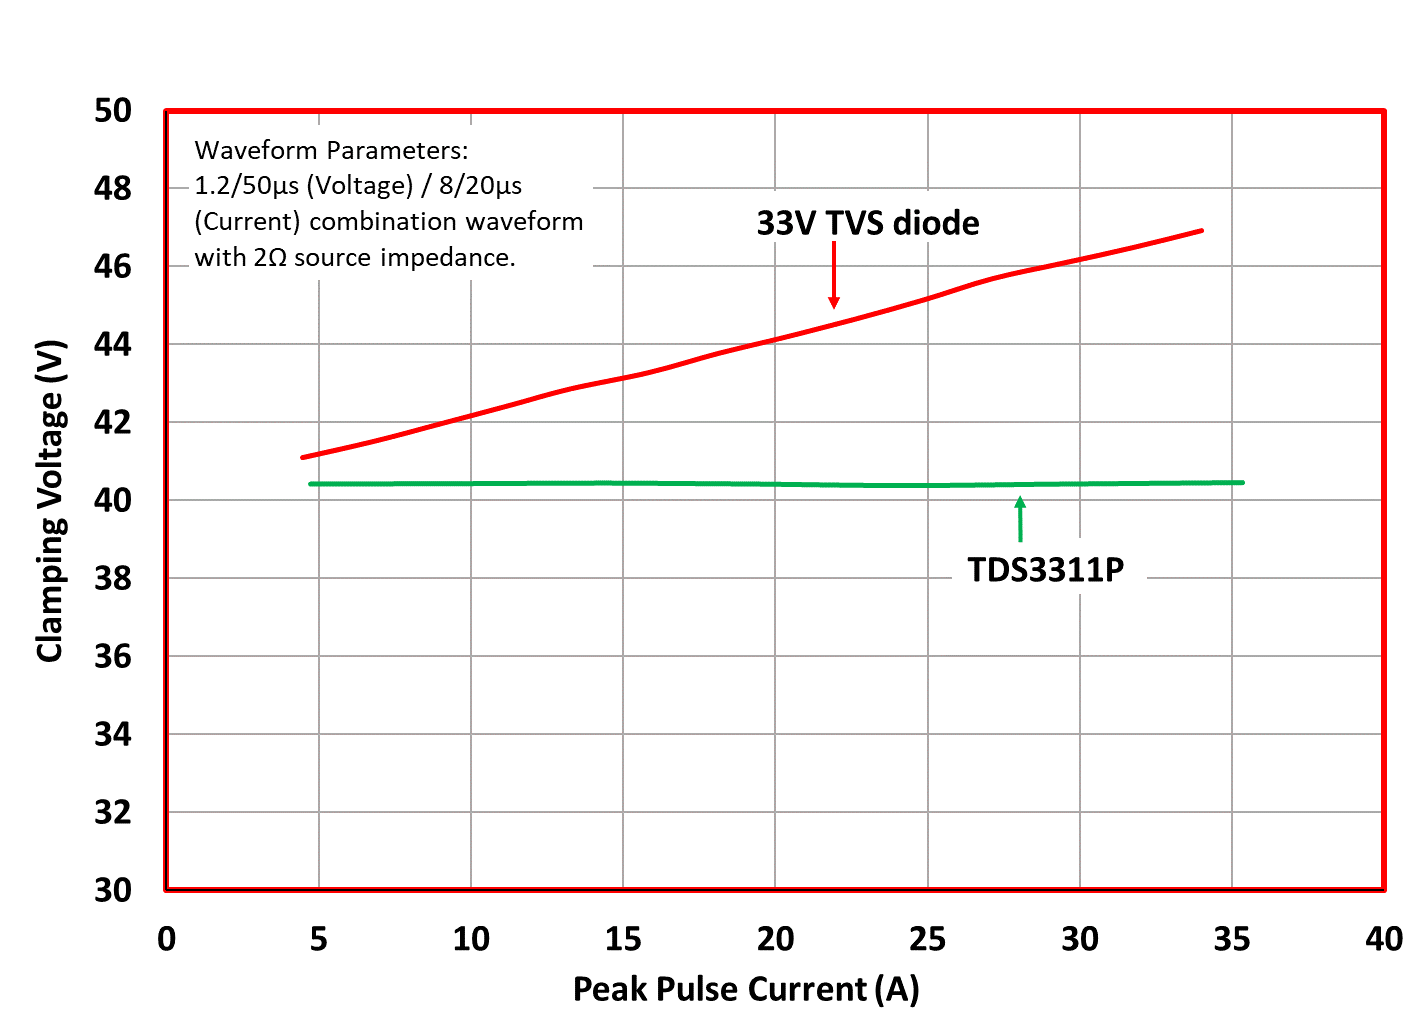 Figure 3. Clamping voltage versus Peak Pulse Current comparison